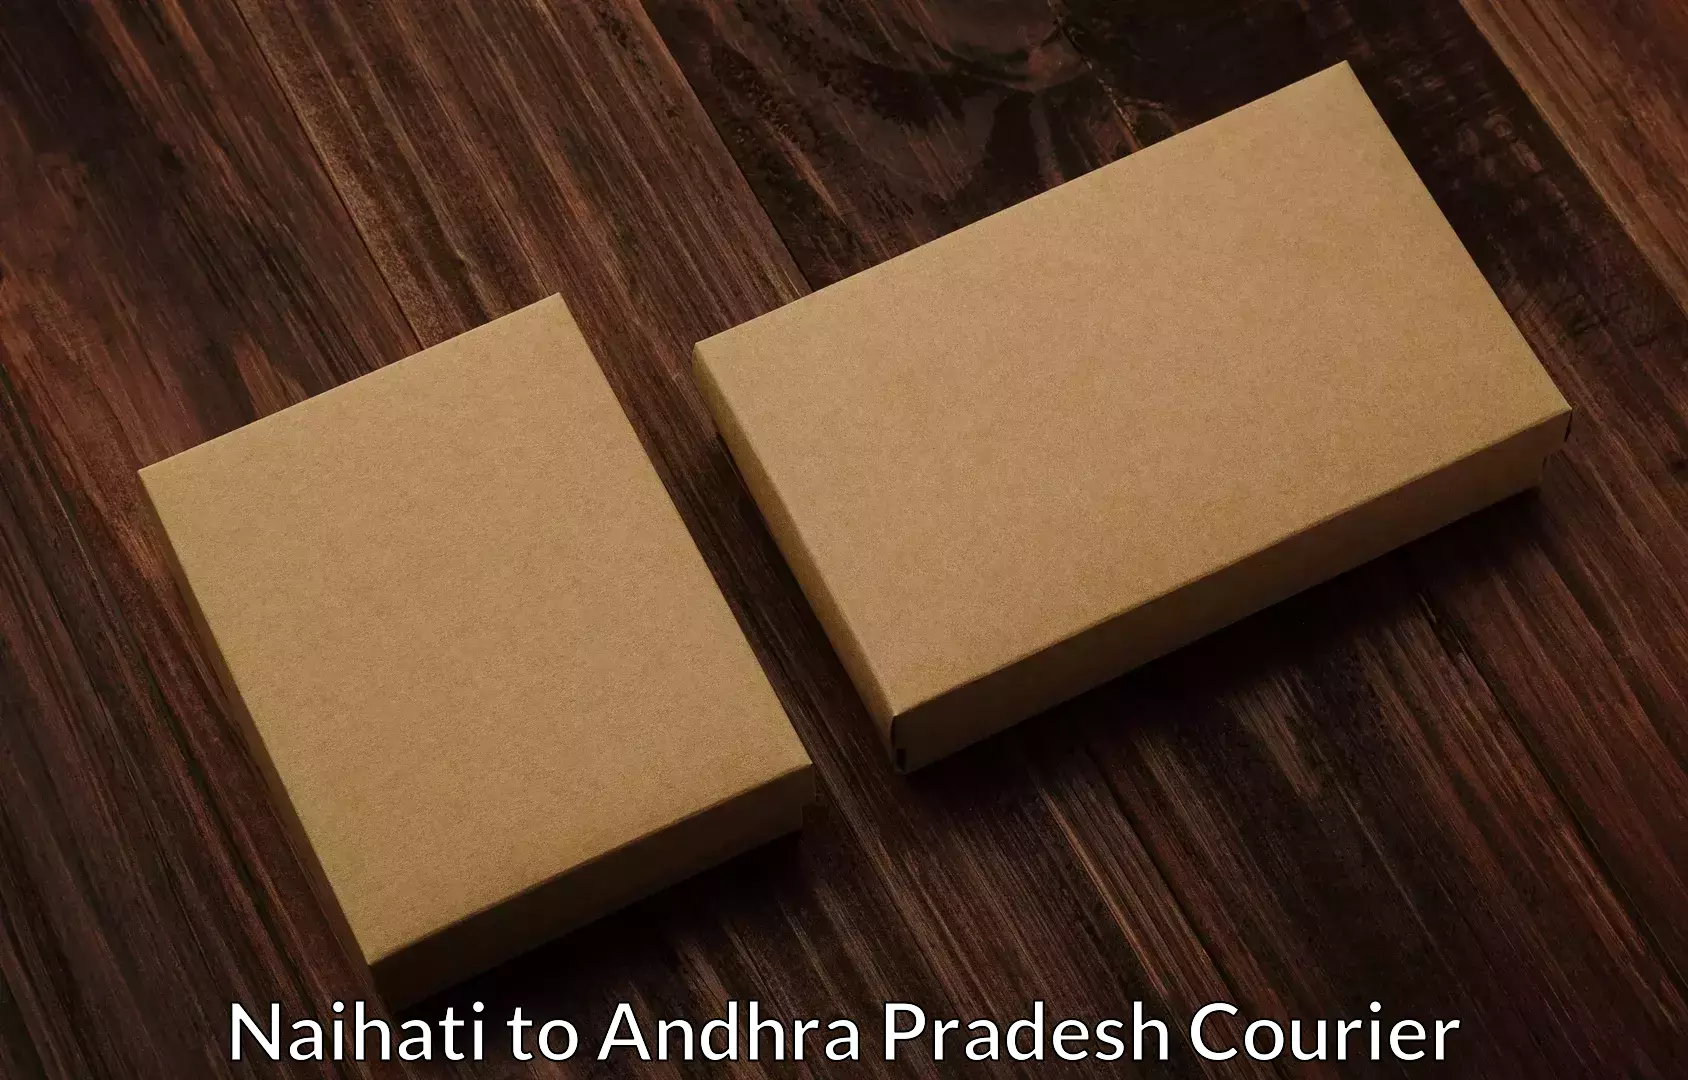 Trusted moving solutions Naihati to Andhra Pradesh